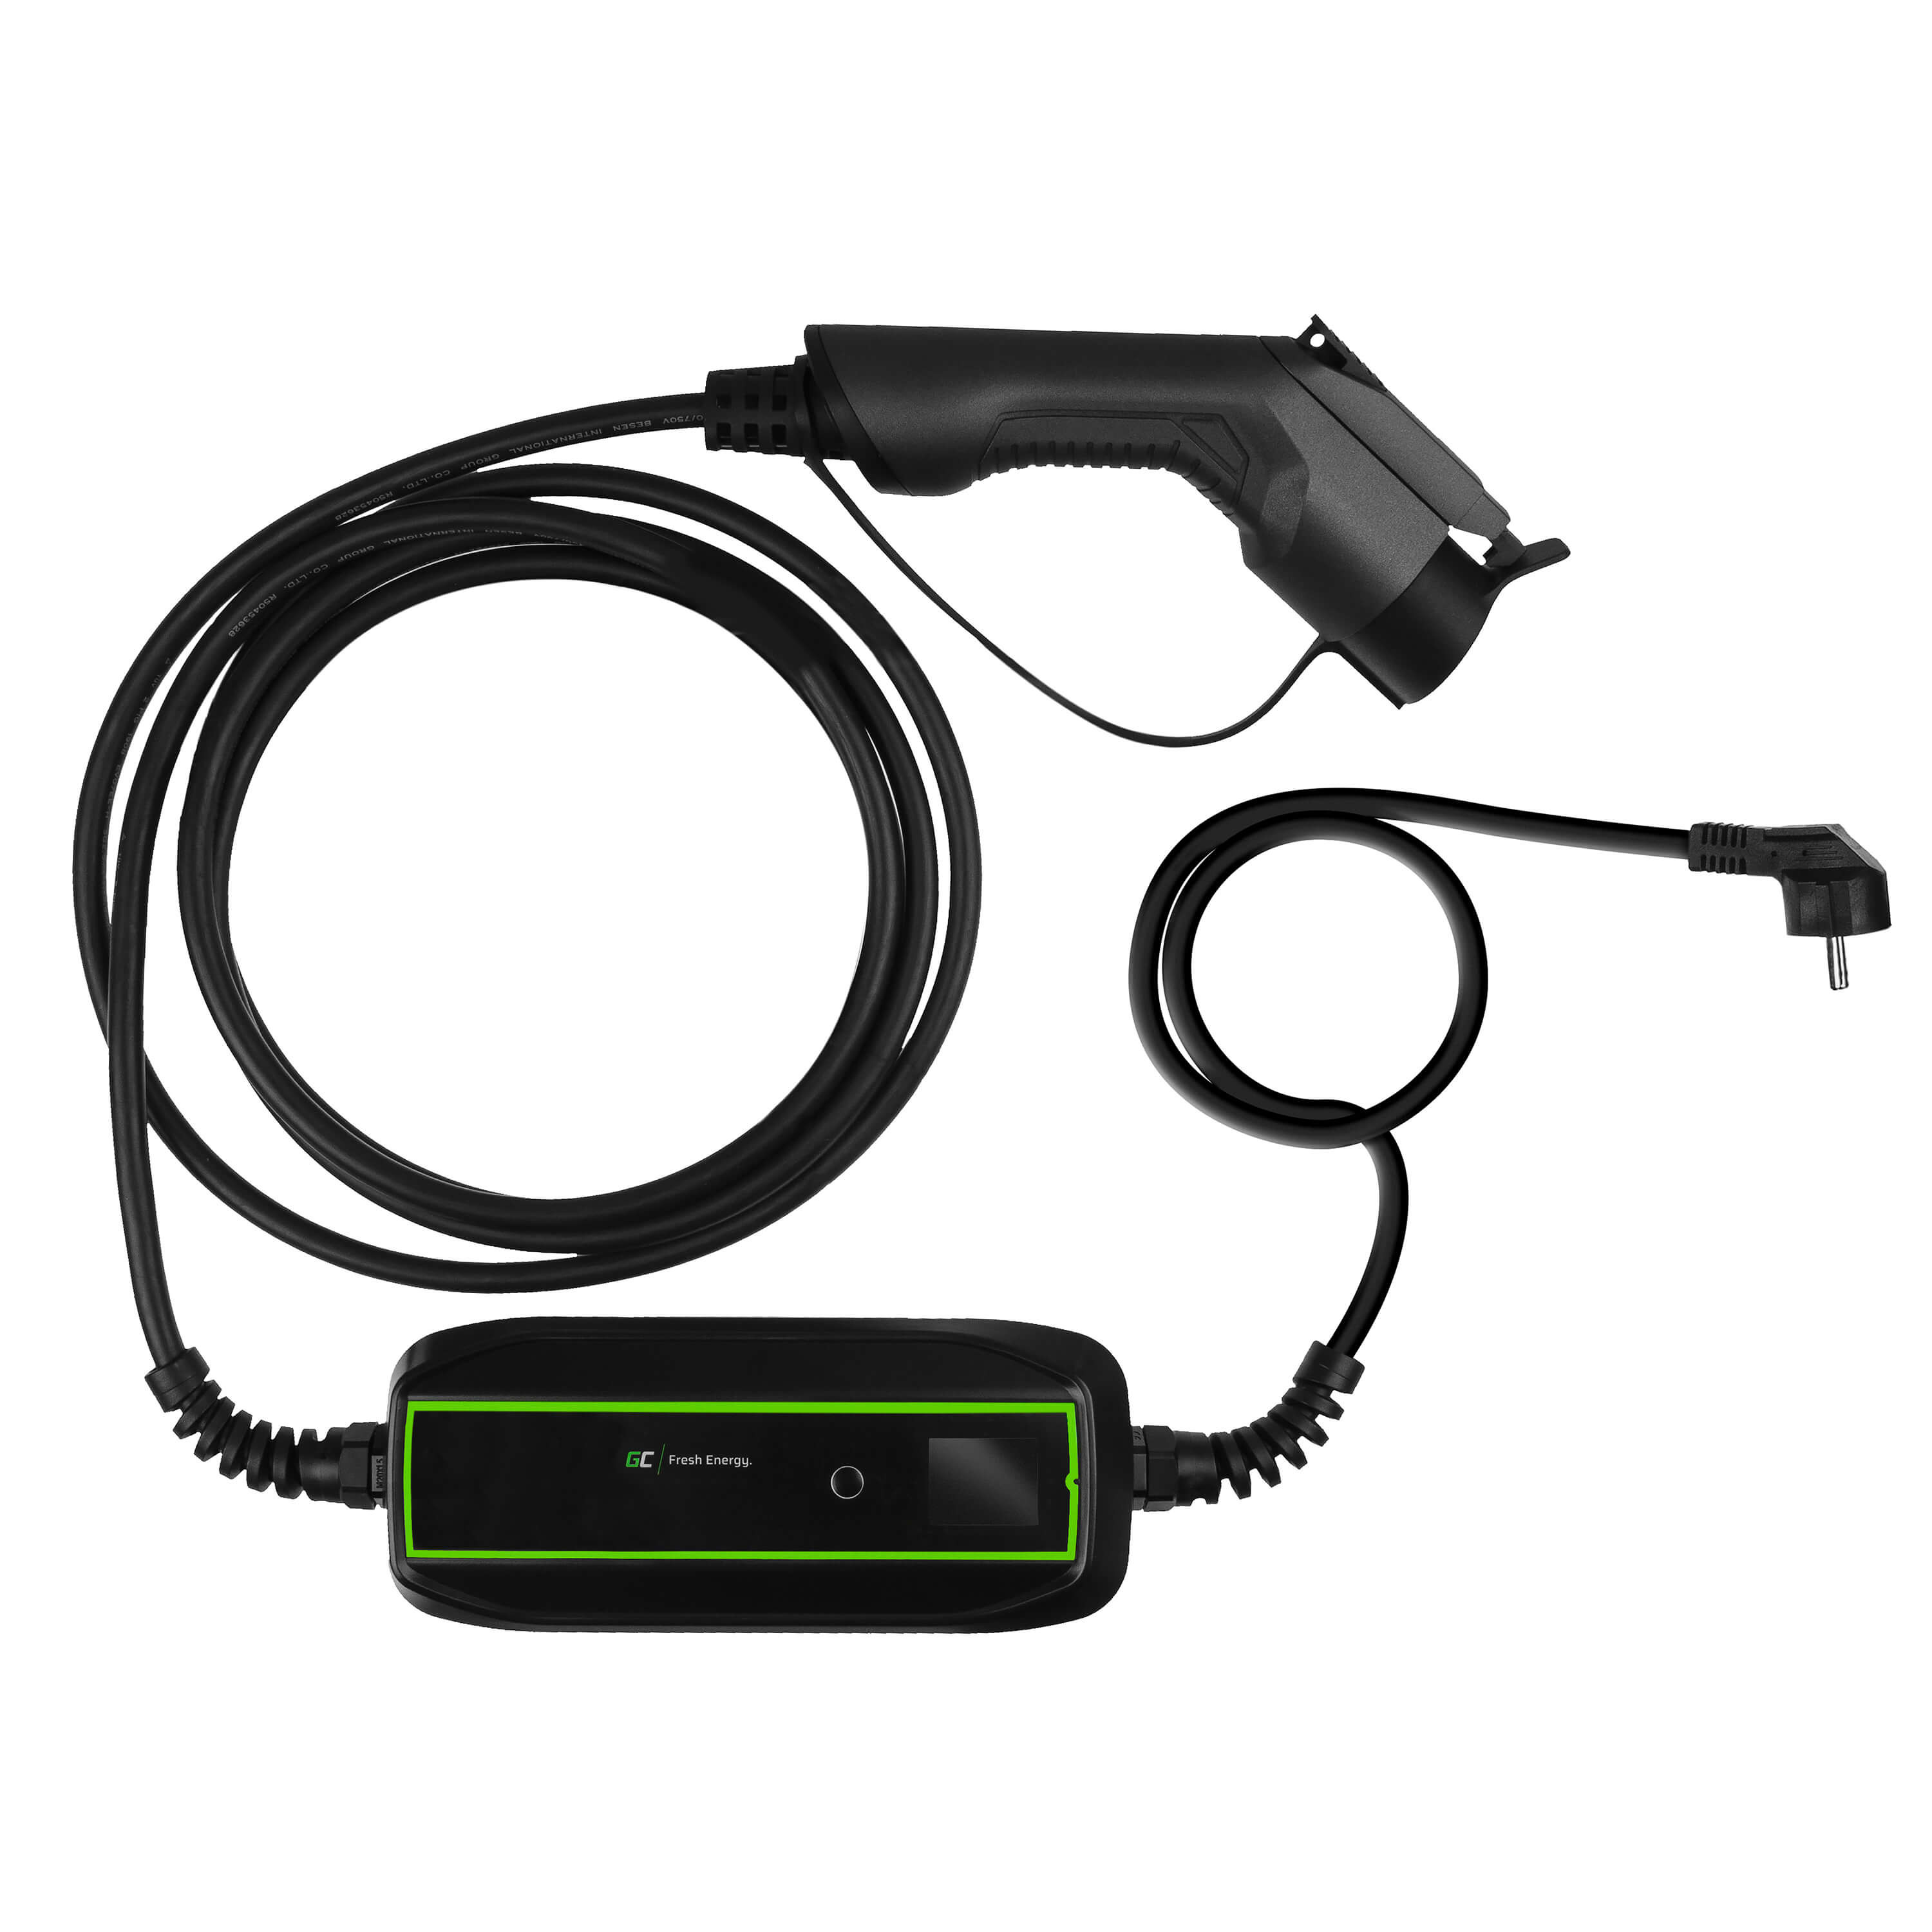 GC EV PowerCable 3,6kW Schuko – mobilní nabíječka typu 1 pro nabíjení elektromobilů a hybridů typu Plug-In